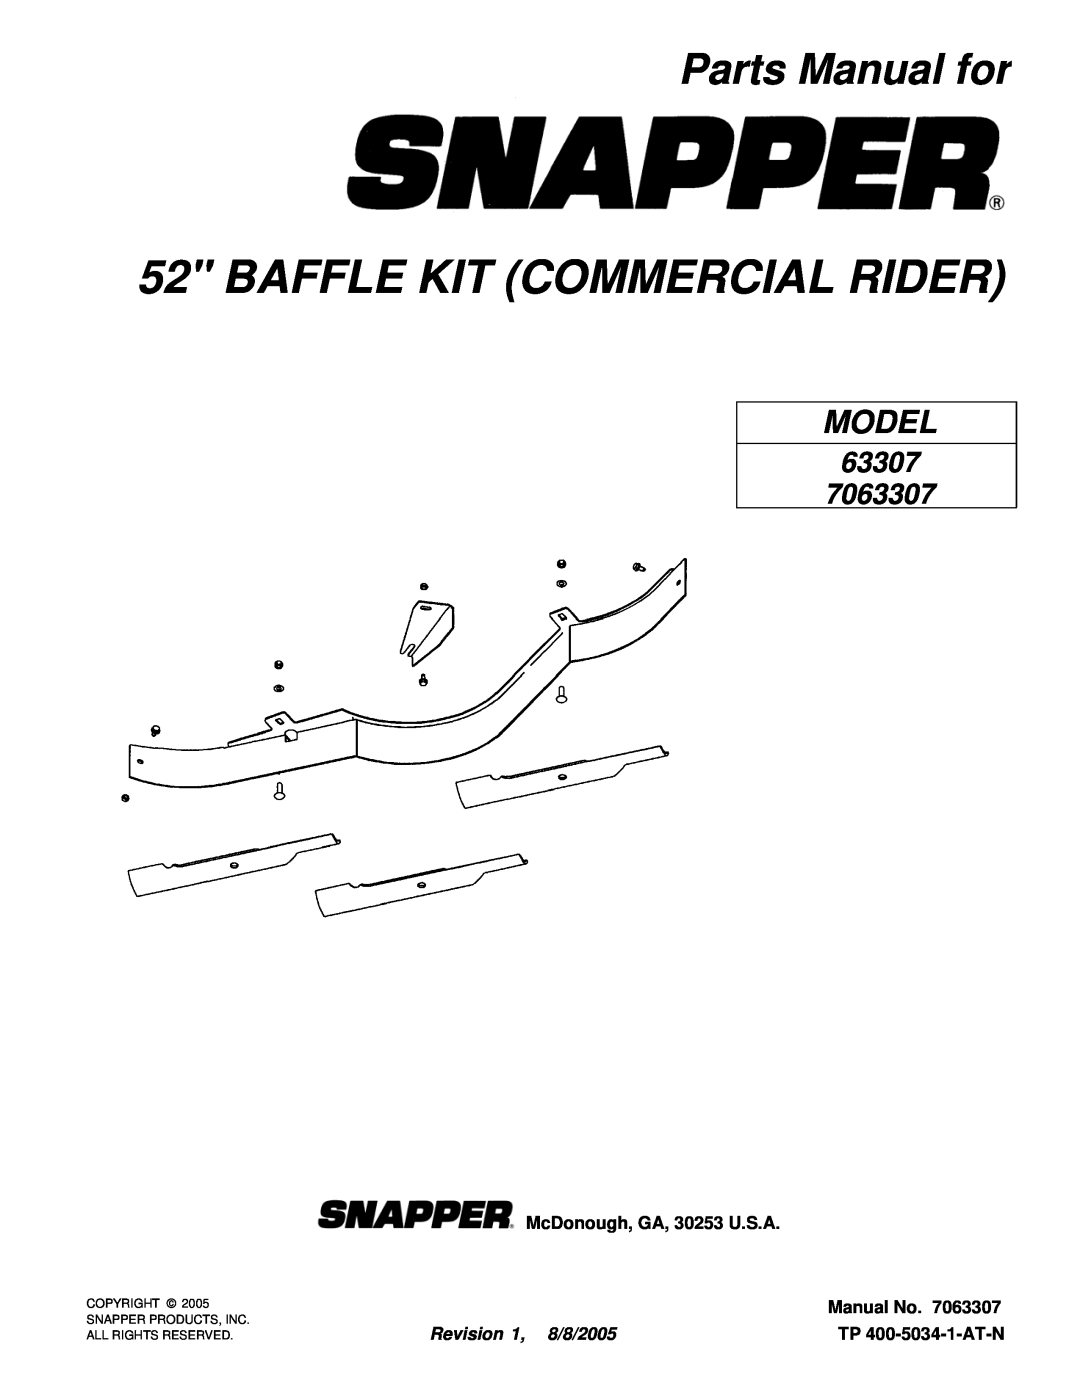 Snapper 7063307 manual Parts Manual for, McDonough, GA, 30253 U.S.A, Manual No, Revision 1, 8/8/2005, TP 400-5034-1-AT-N 